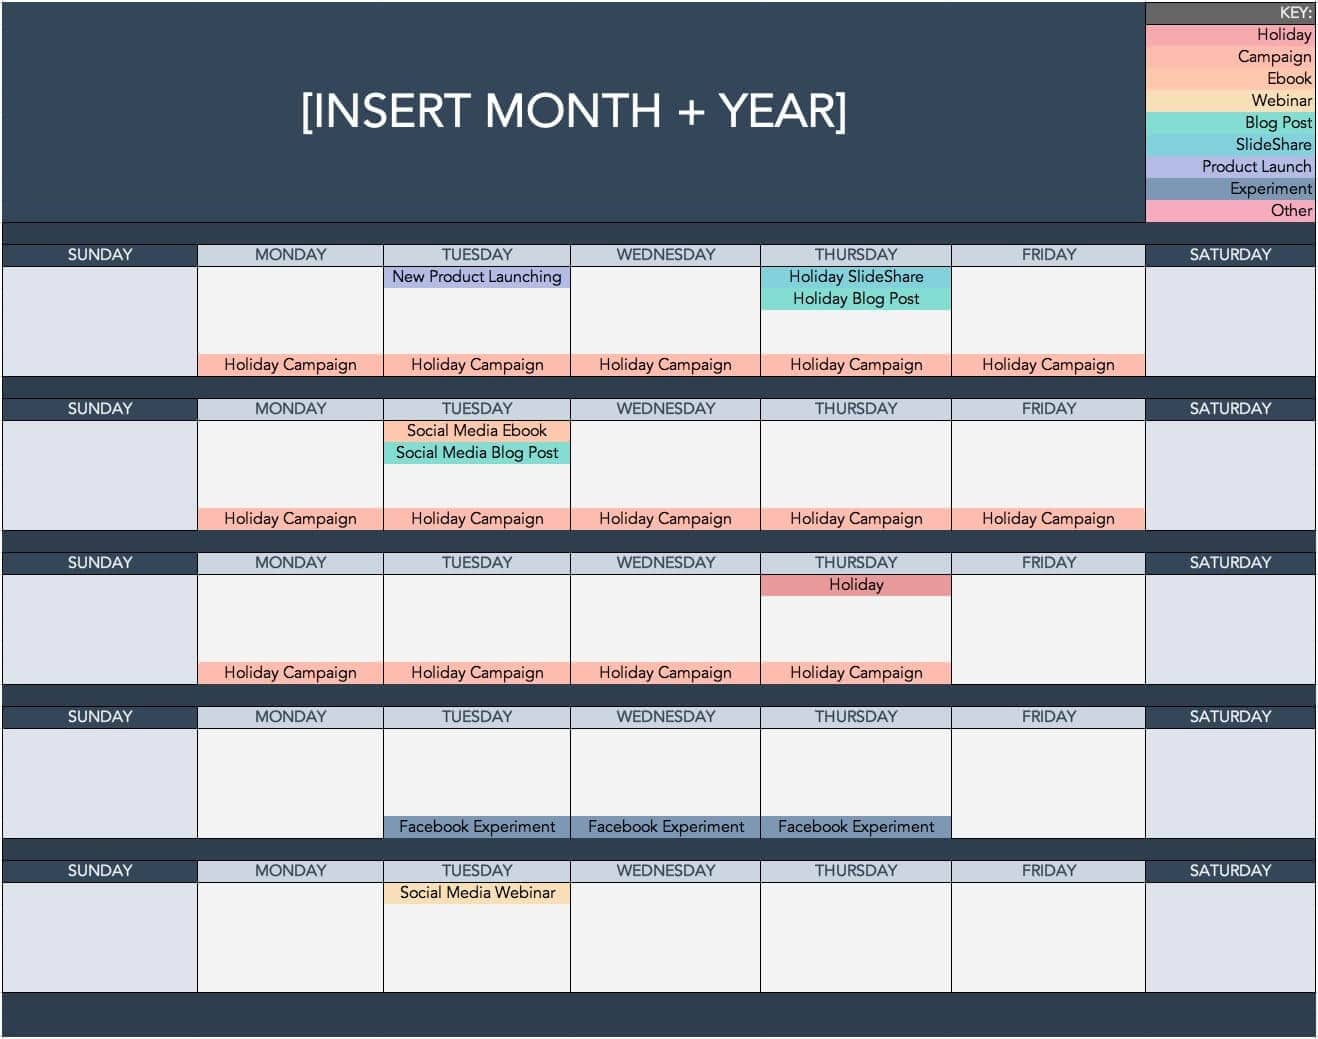 HubSpot-Content-Calendar